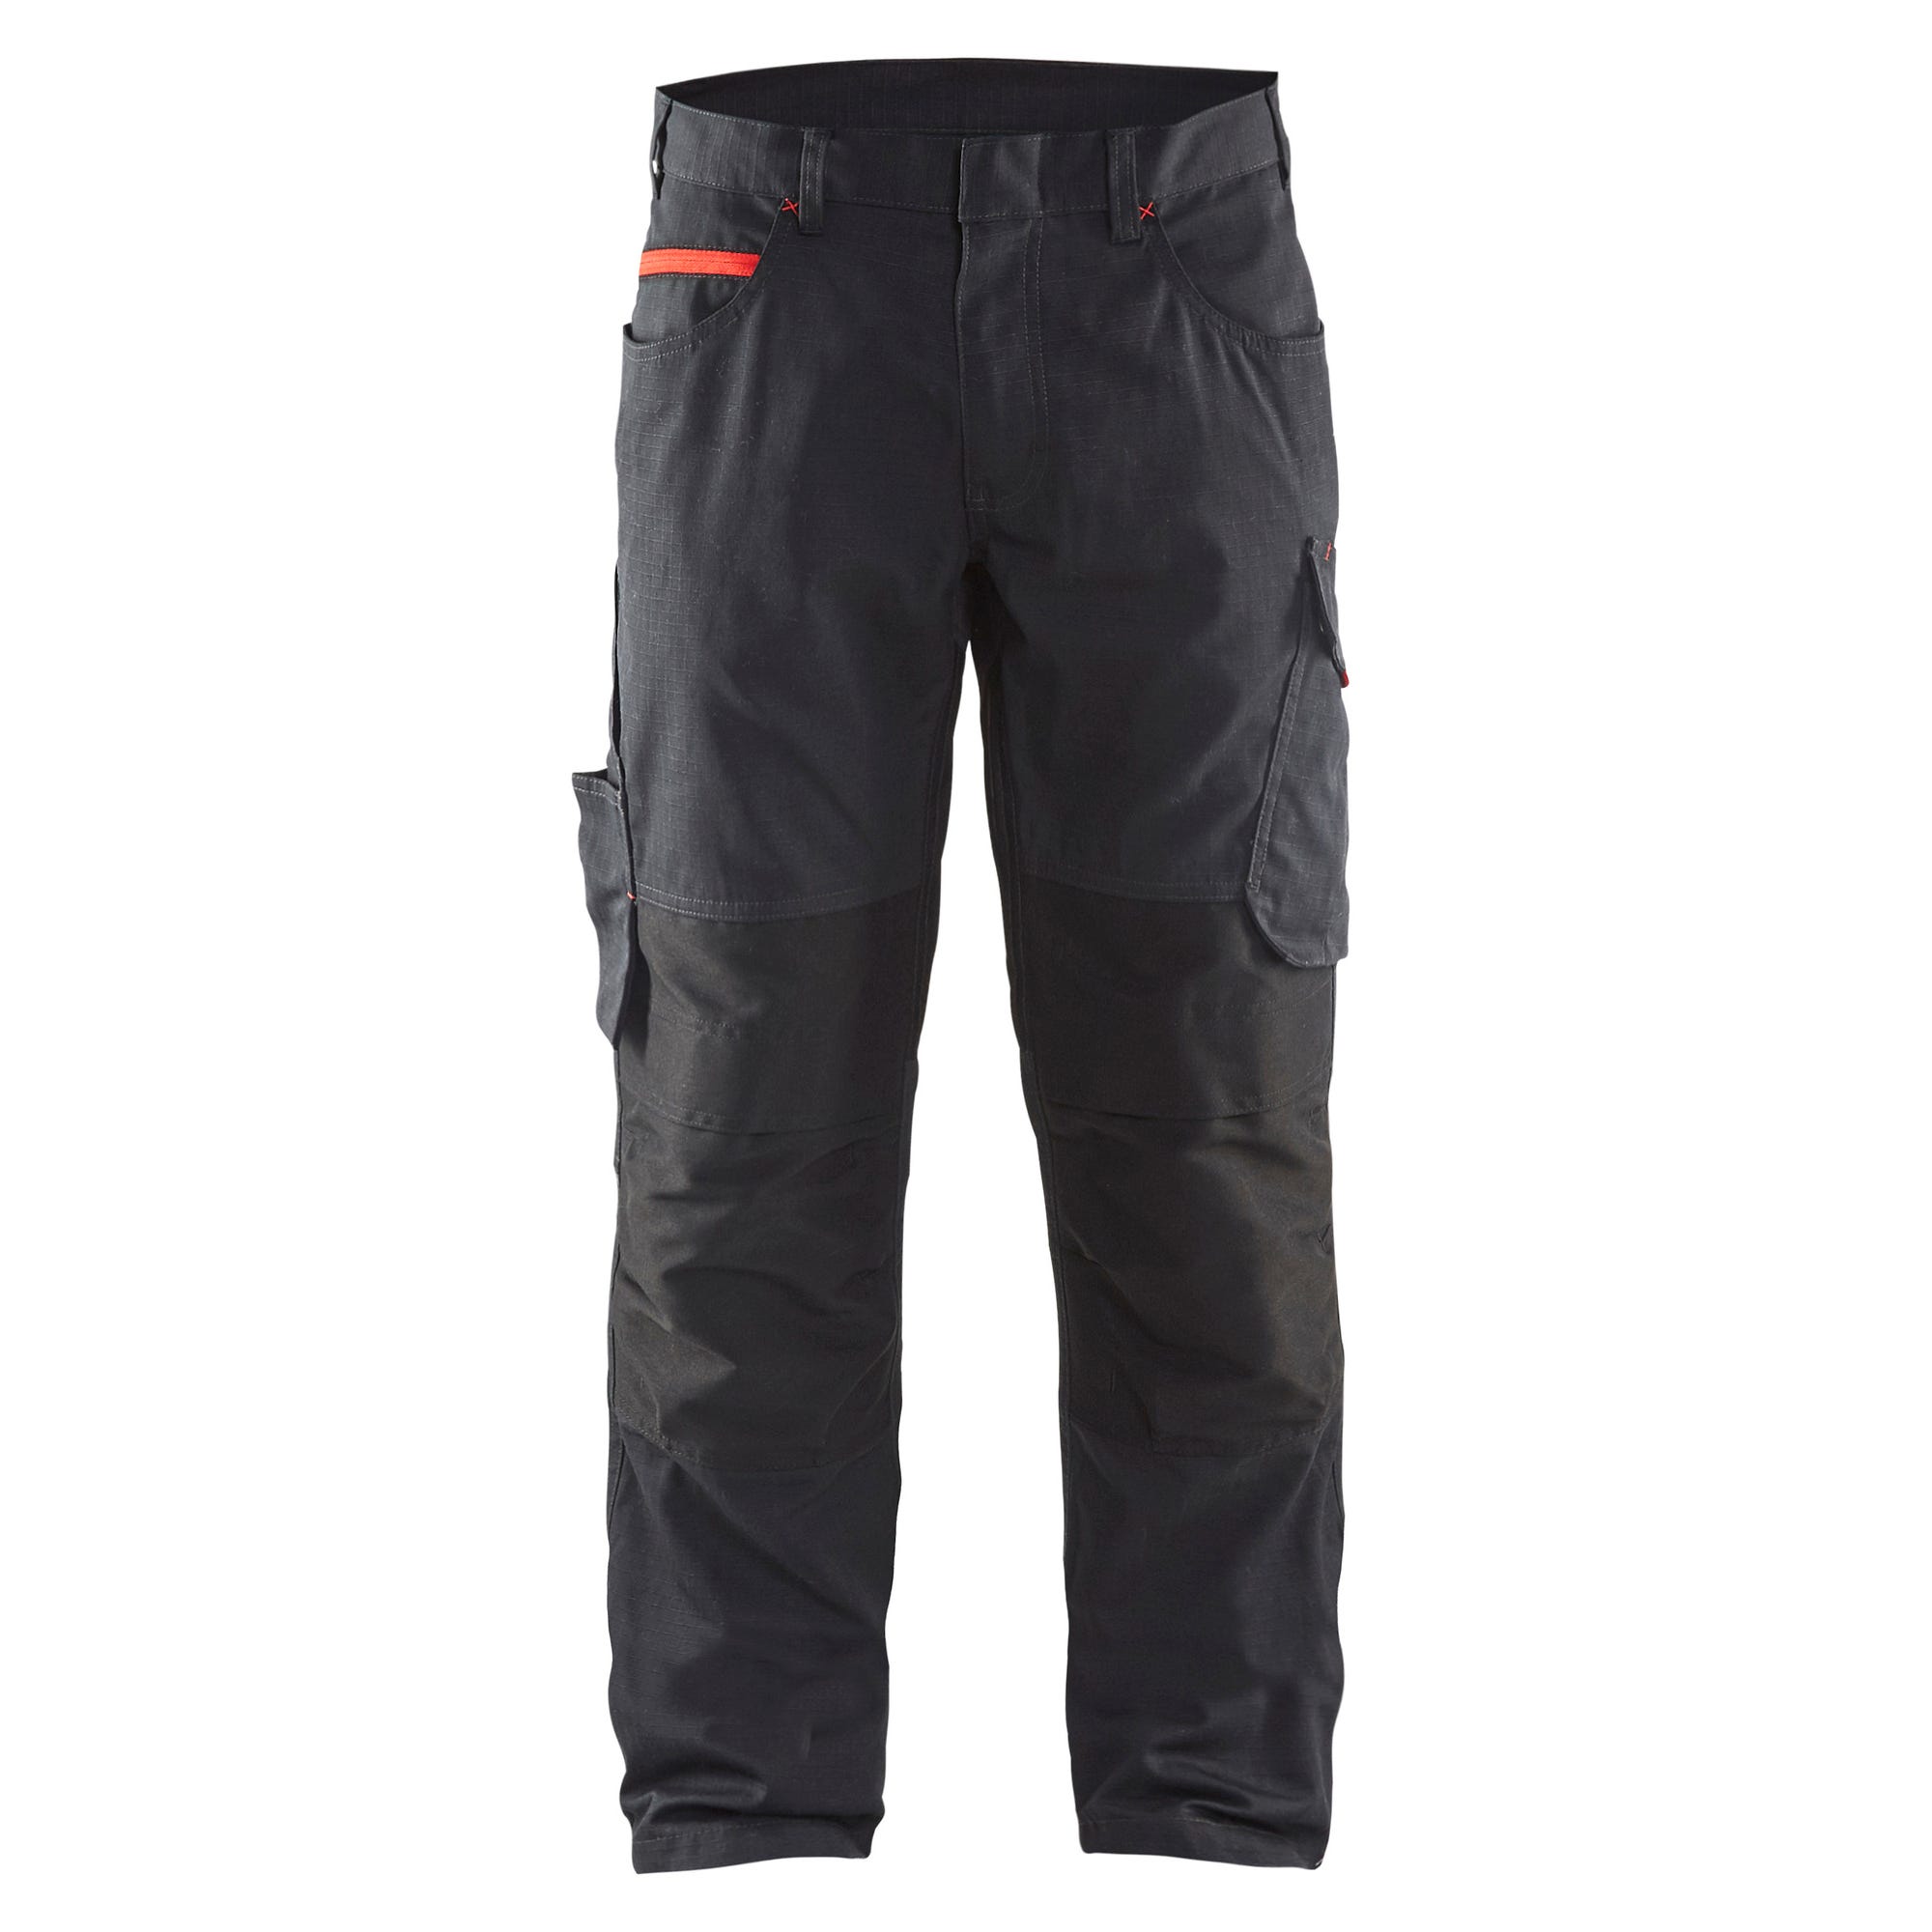 Pantalon de travail stretch Noir/Rouge T.56 1495 - BLAKLADER 0